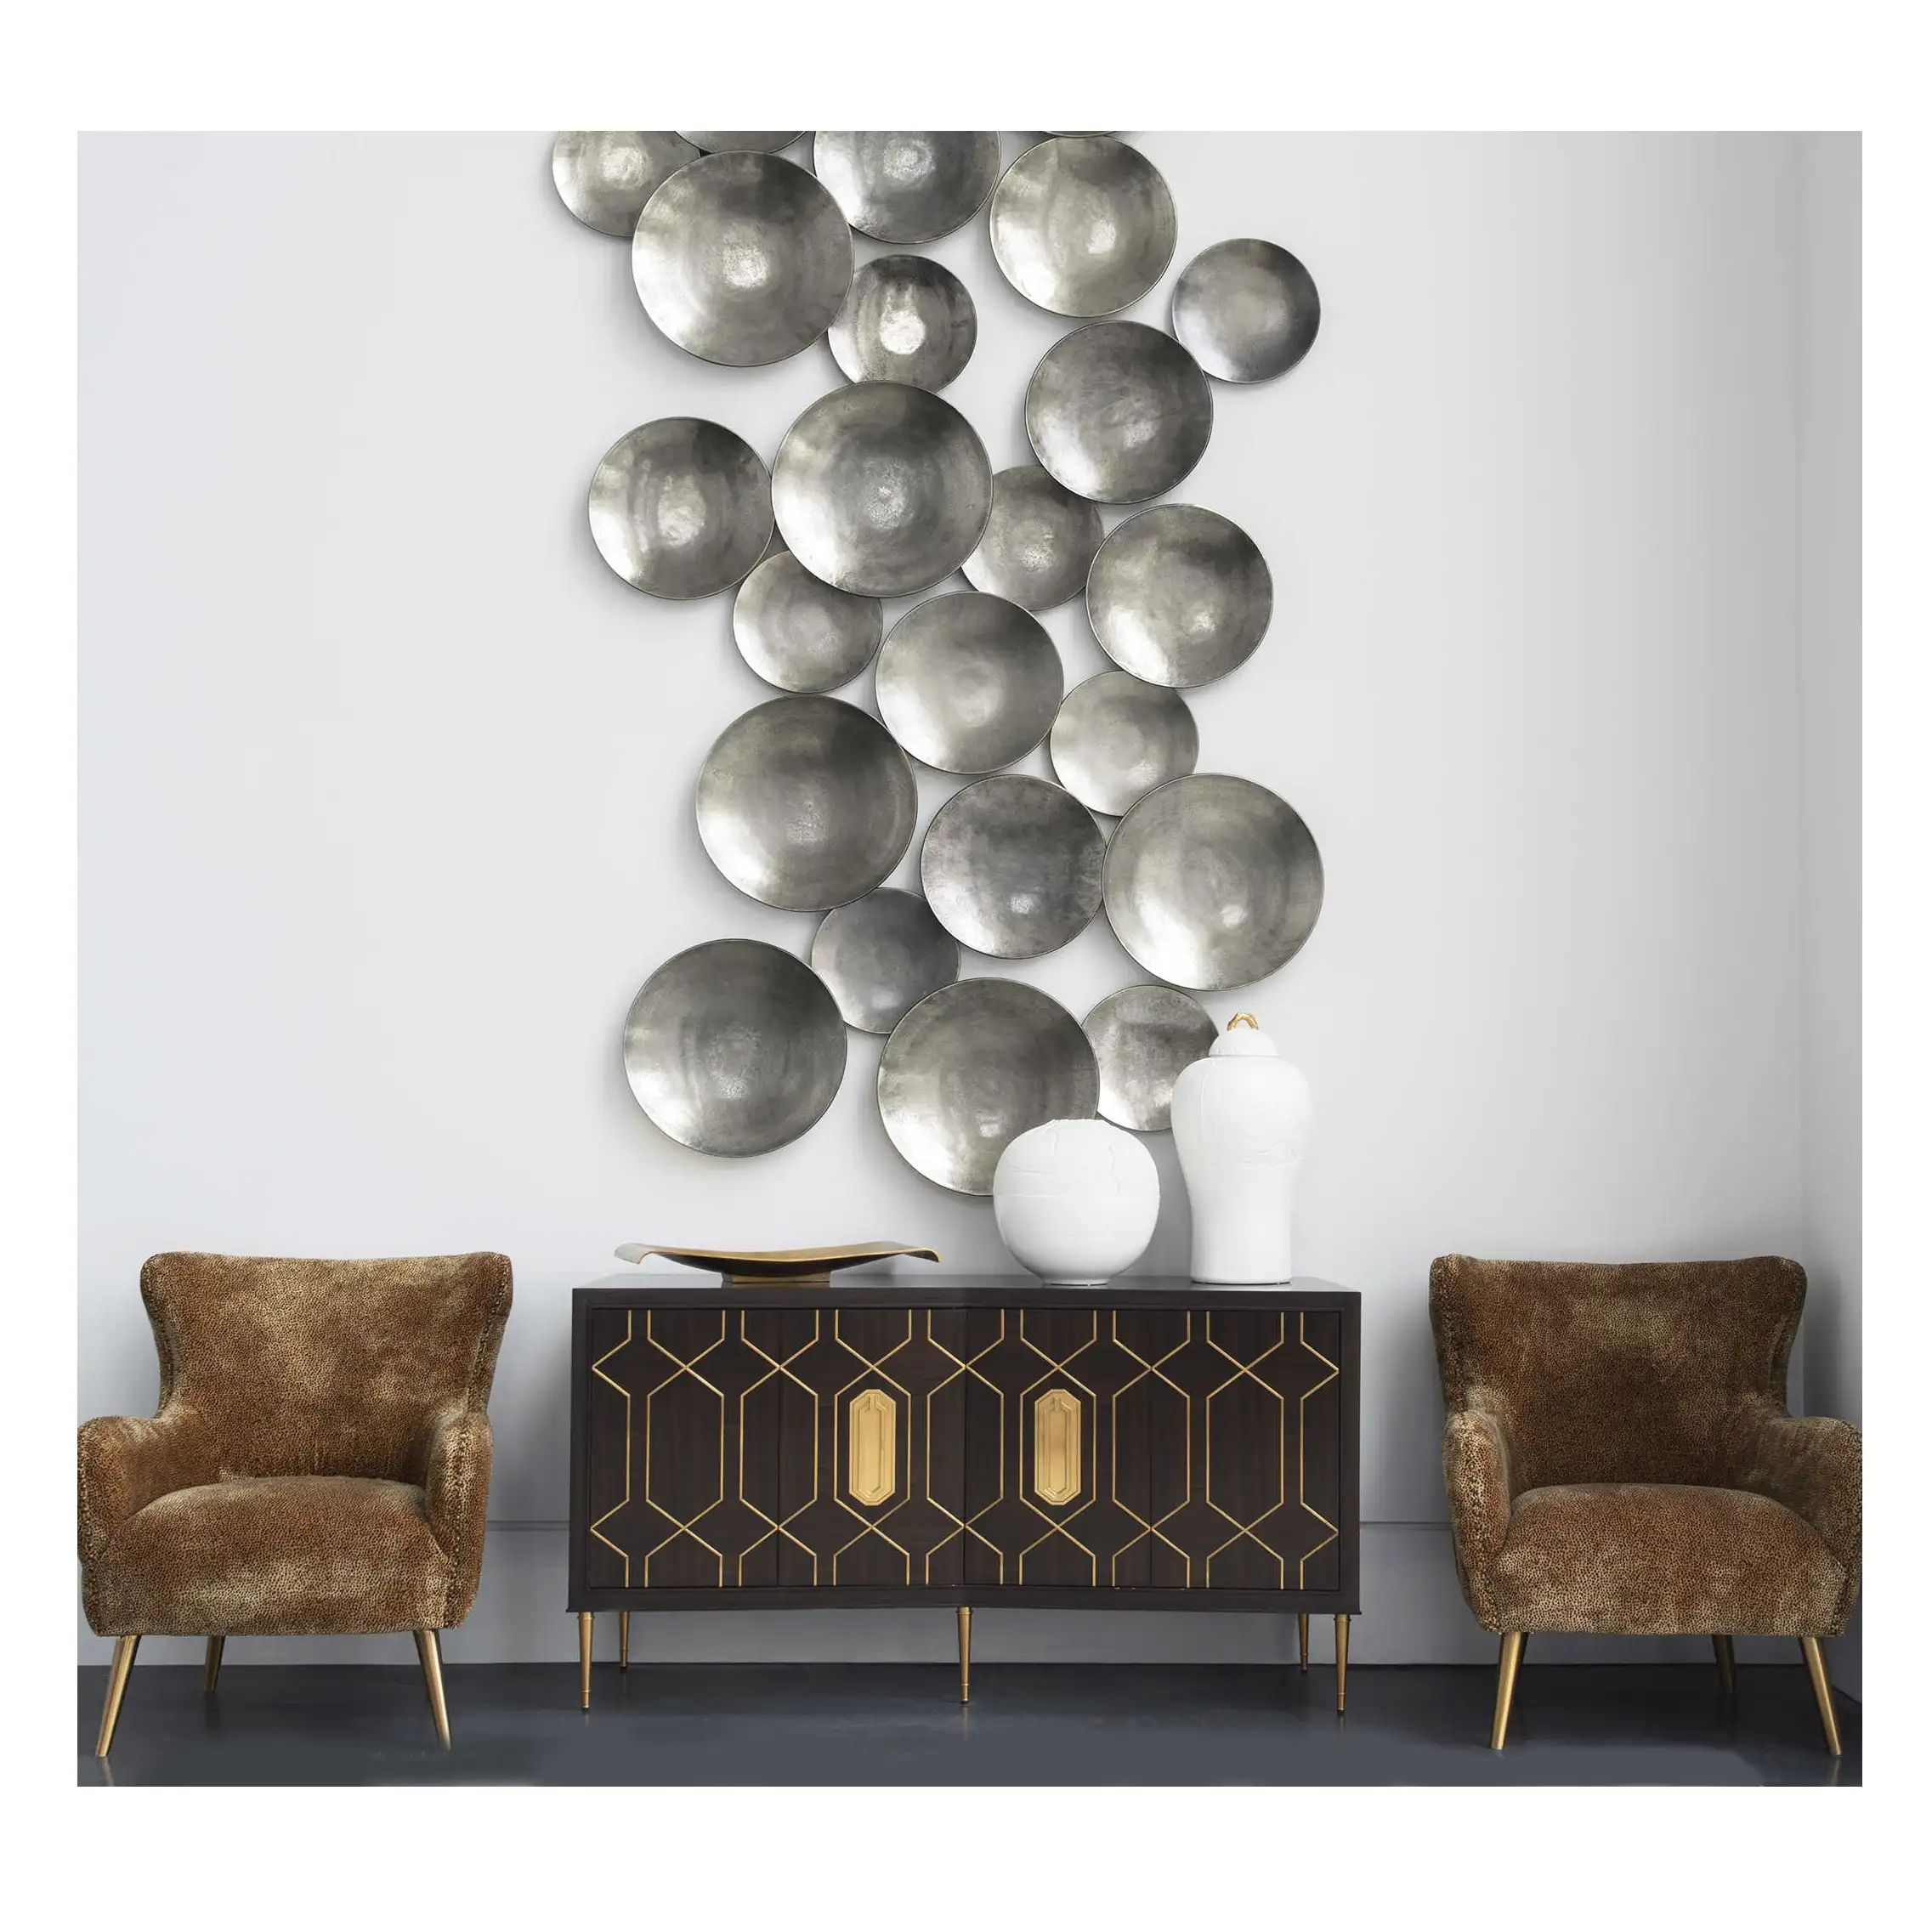 Adorno decorativo de plata para pared, decoración artística de Metal para sala de estar